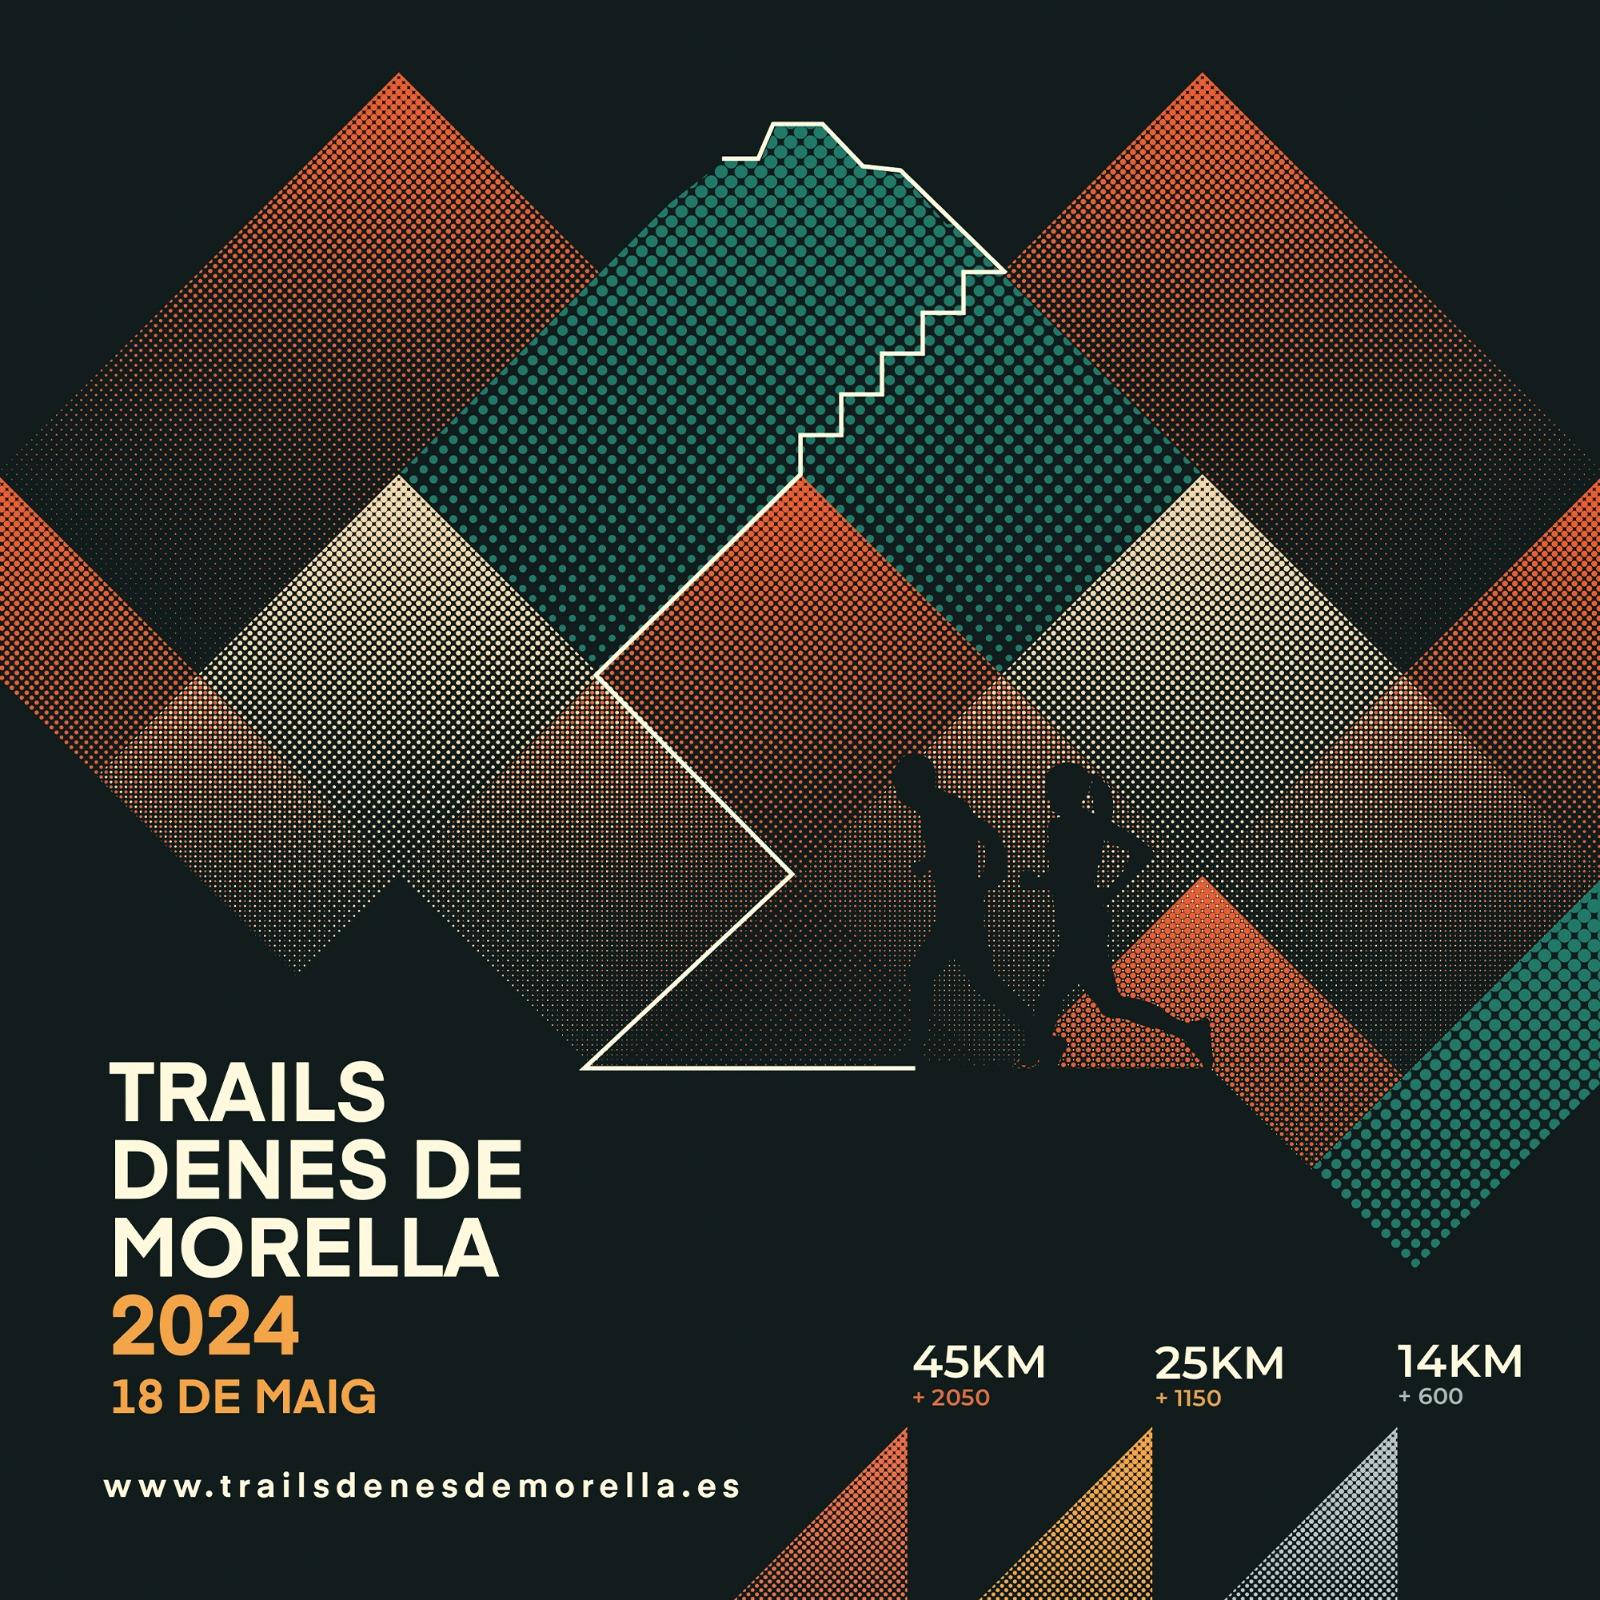 Trails Denes de Morella 2024